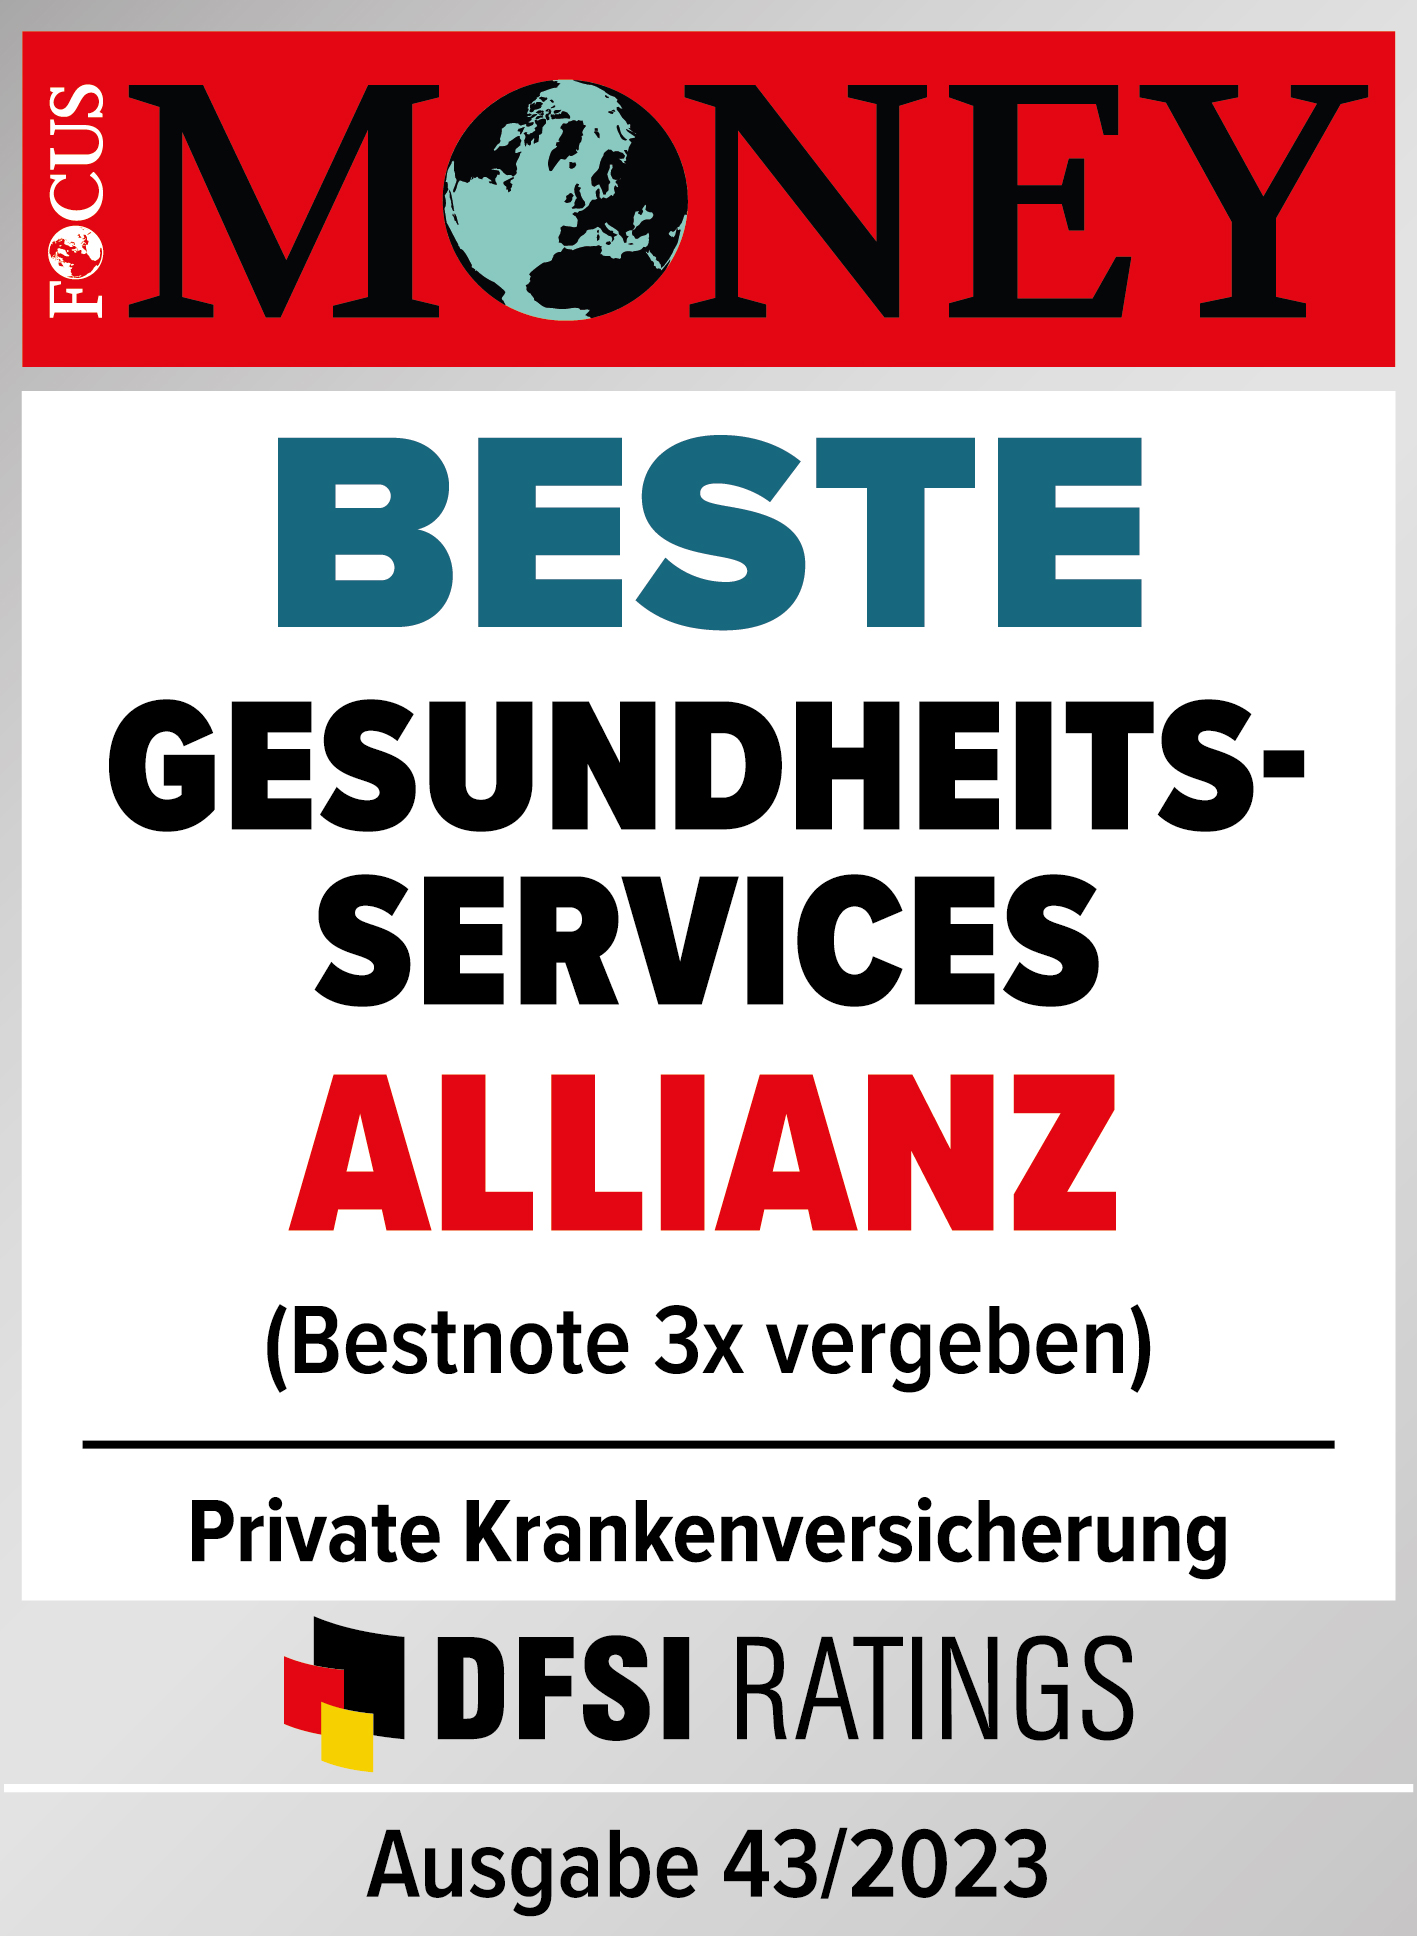 Testsiegel: Allianz Private Krankenversicherung: Beste Gesundheitsservices, augezeichnet von Focus Money, Ausgabe 43/2022